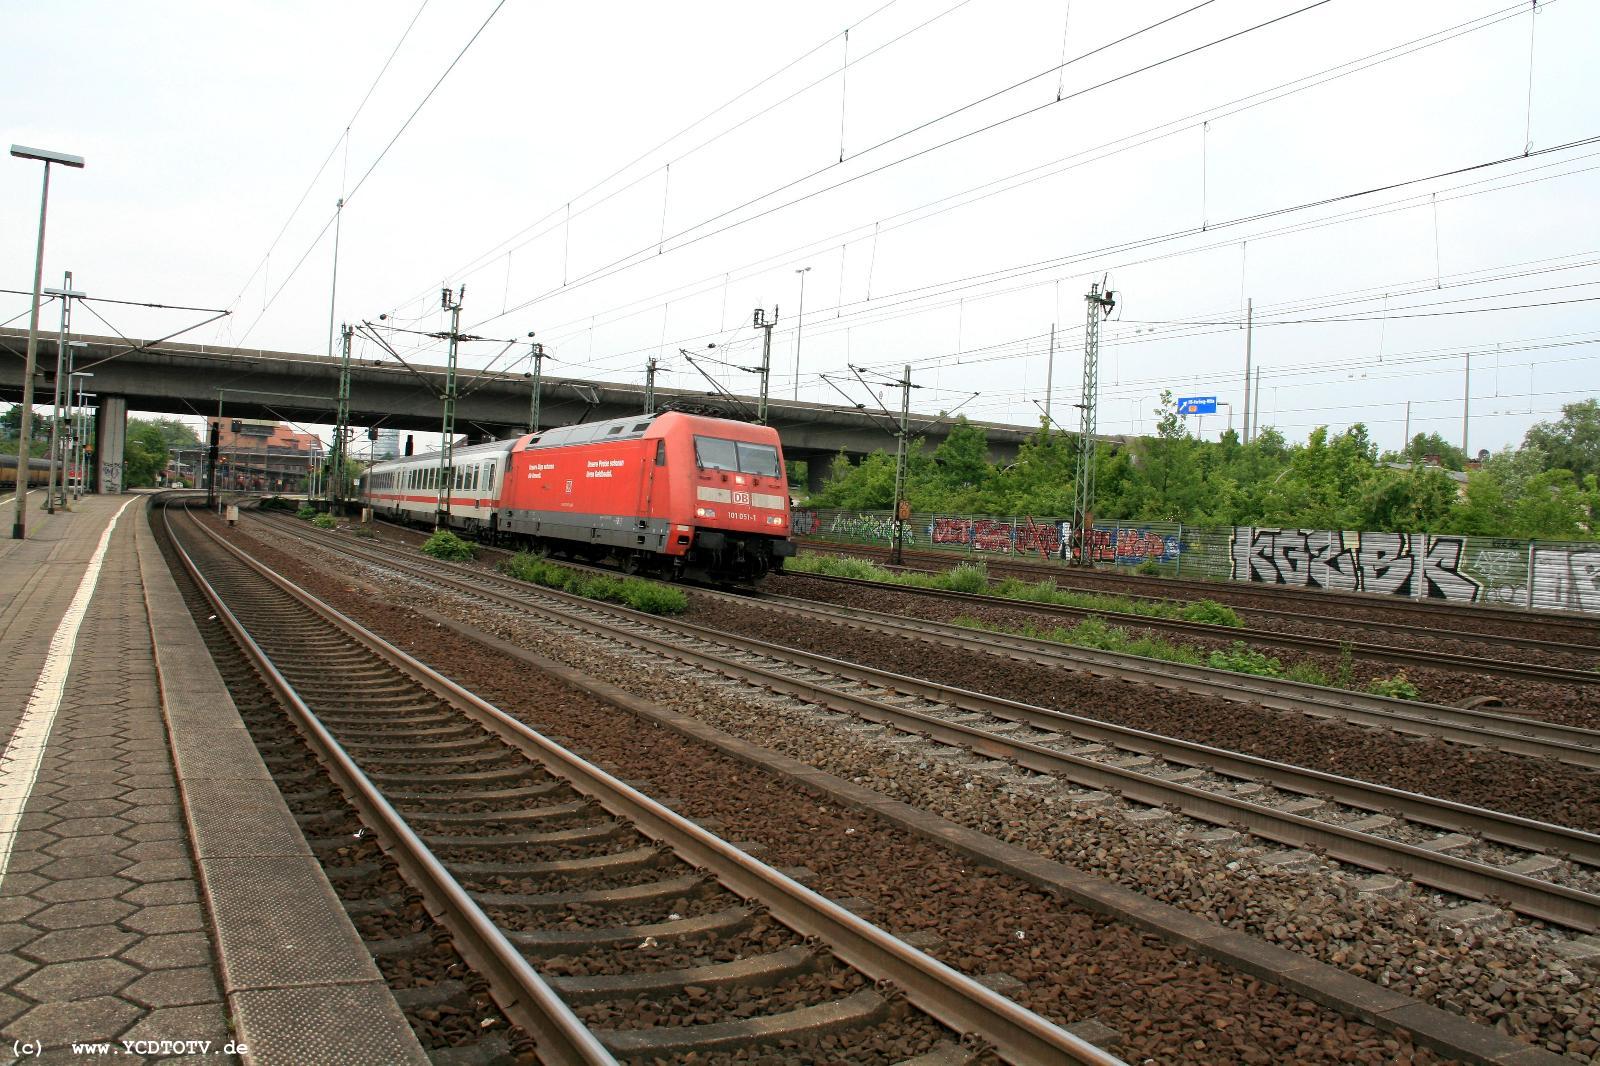  Bahnhof Hamburg-Harburg, 18.05.2011, Bahnsteig 5 Blick Richtung Norden 